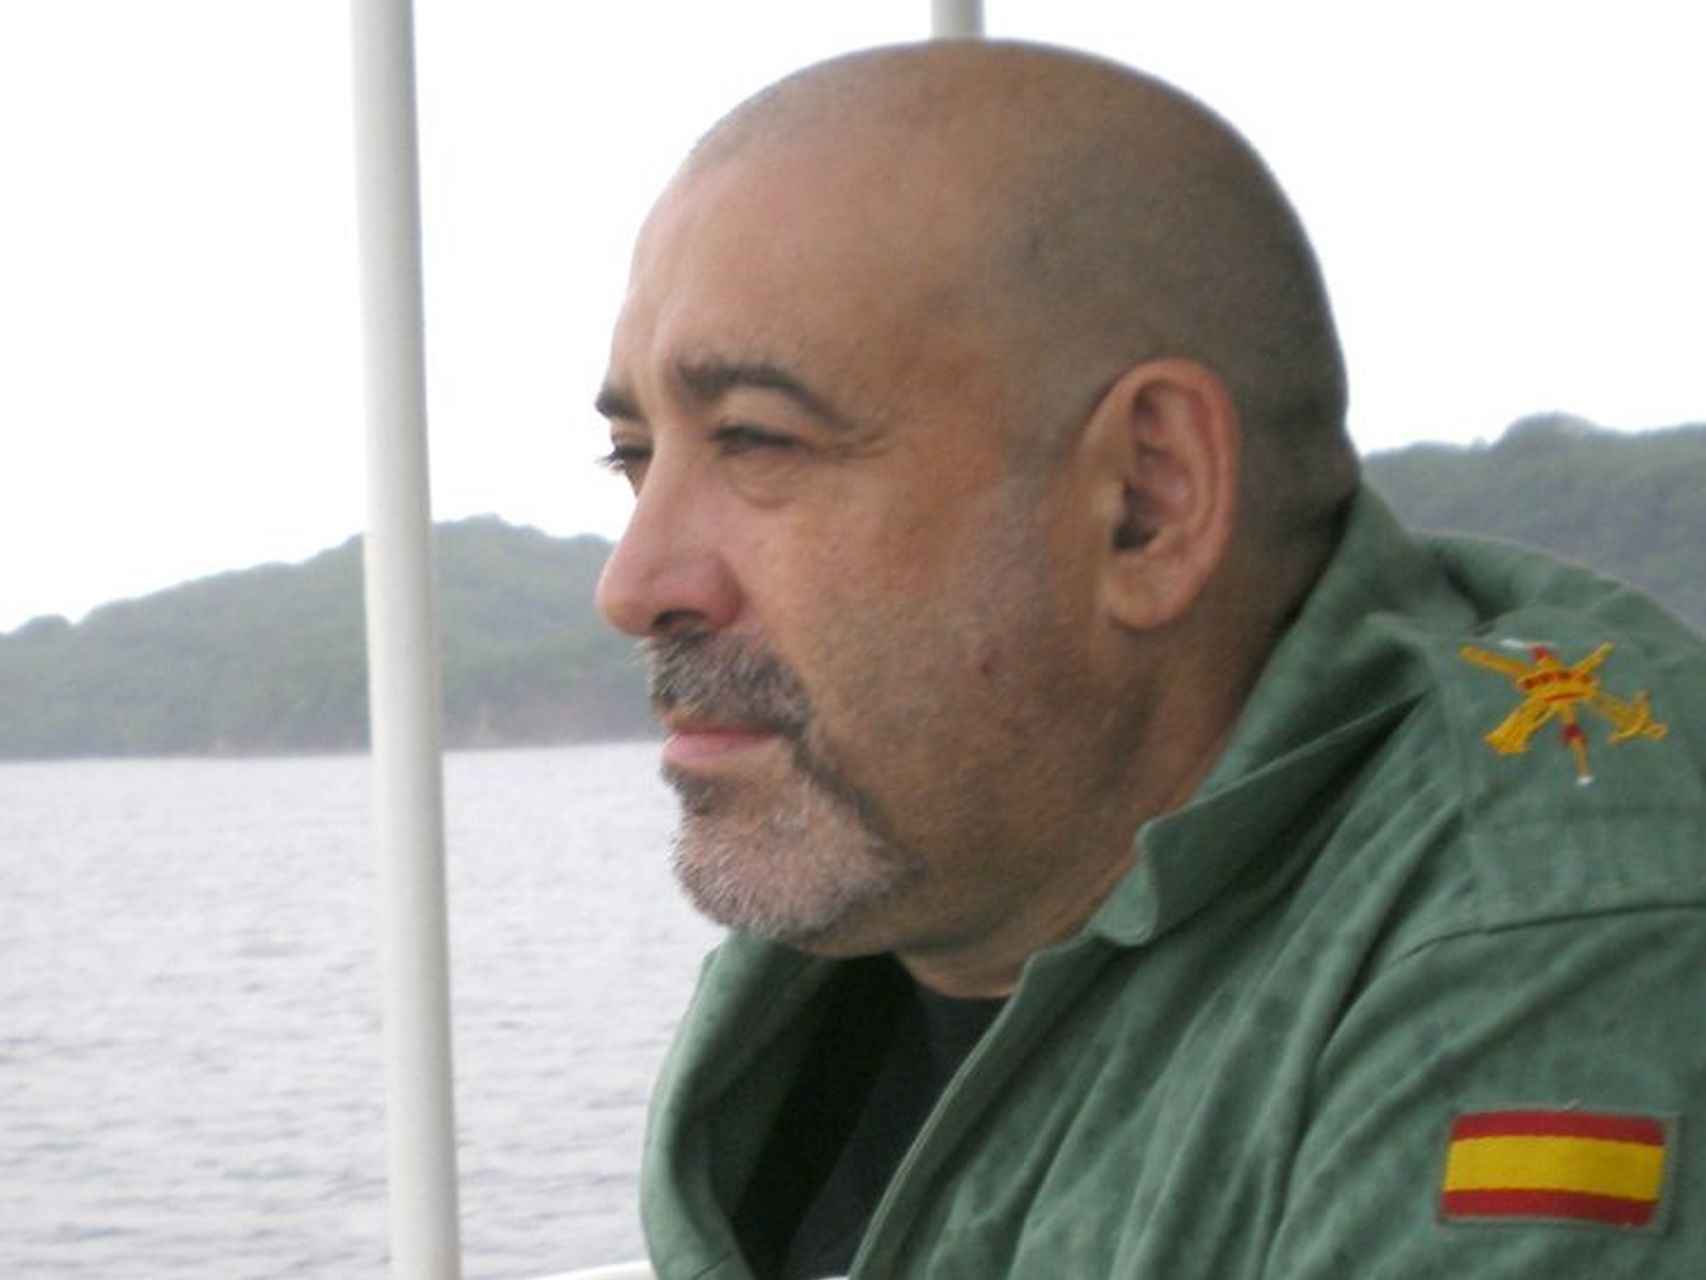 Víctor Láinez tenía 55 años de edad y era natural de Terrassa. Vivía en Zaragoza.